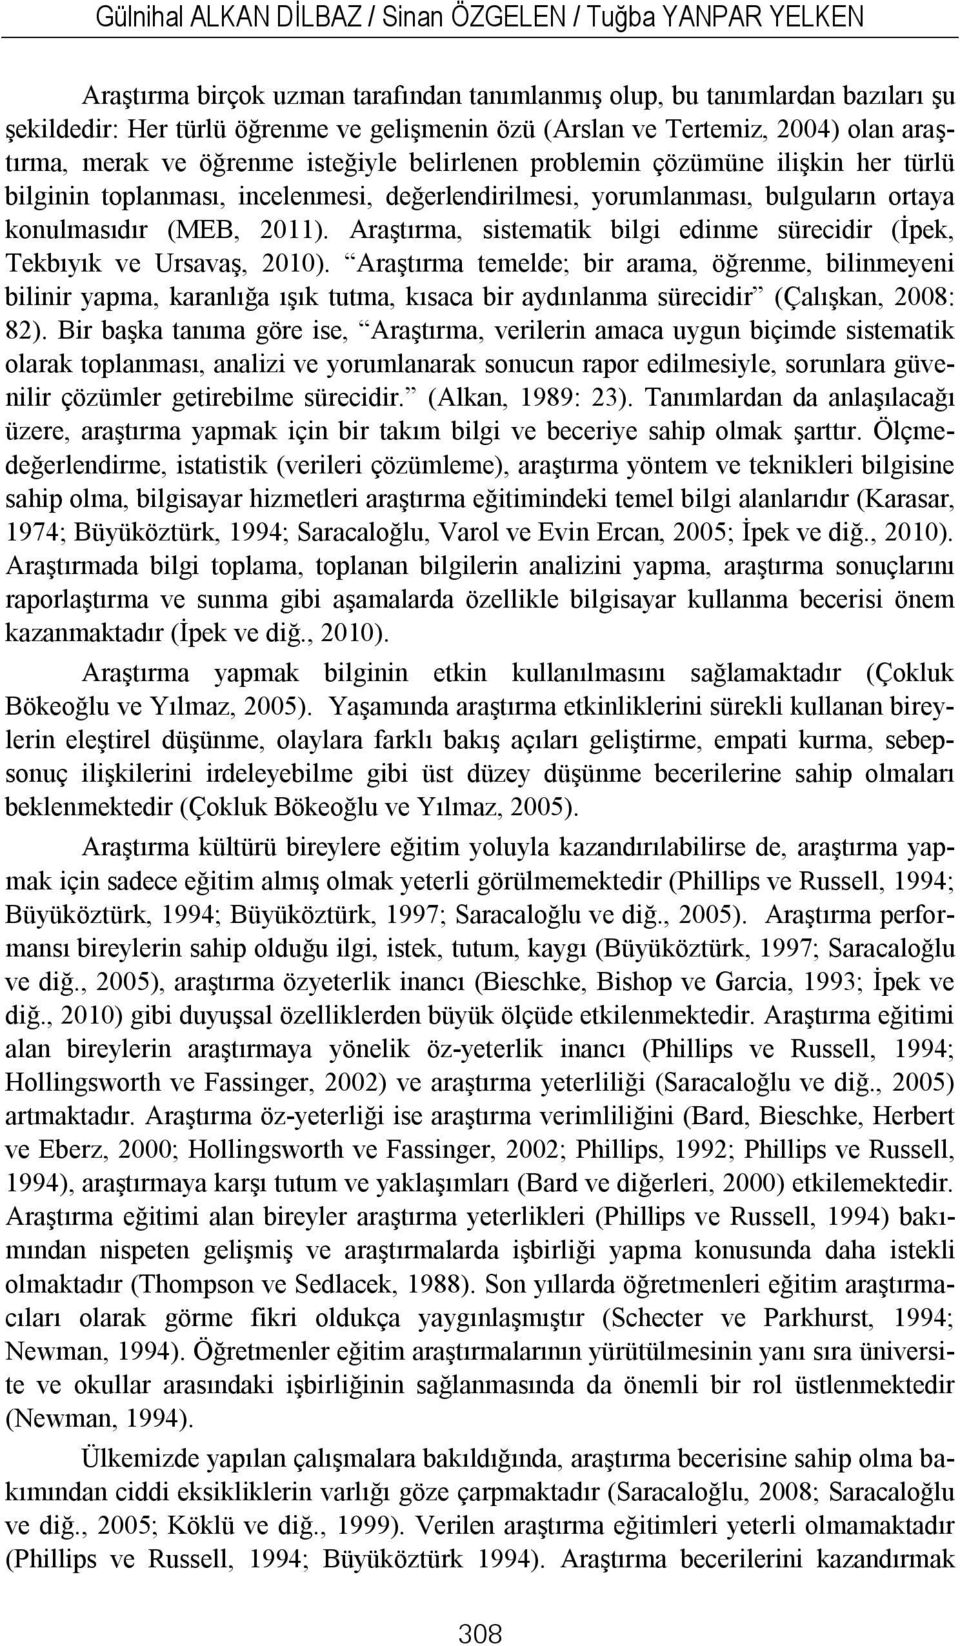 konulmasıdır (MEB, 2011). Araştırma, sistematik bilgi edinme sürecidir (İpek, Tekbıyık ve Ursavaş, 2010).